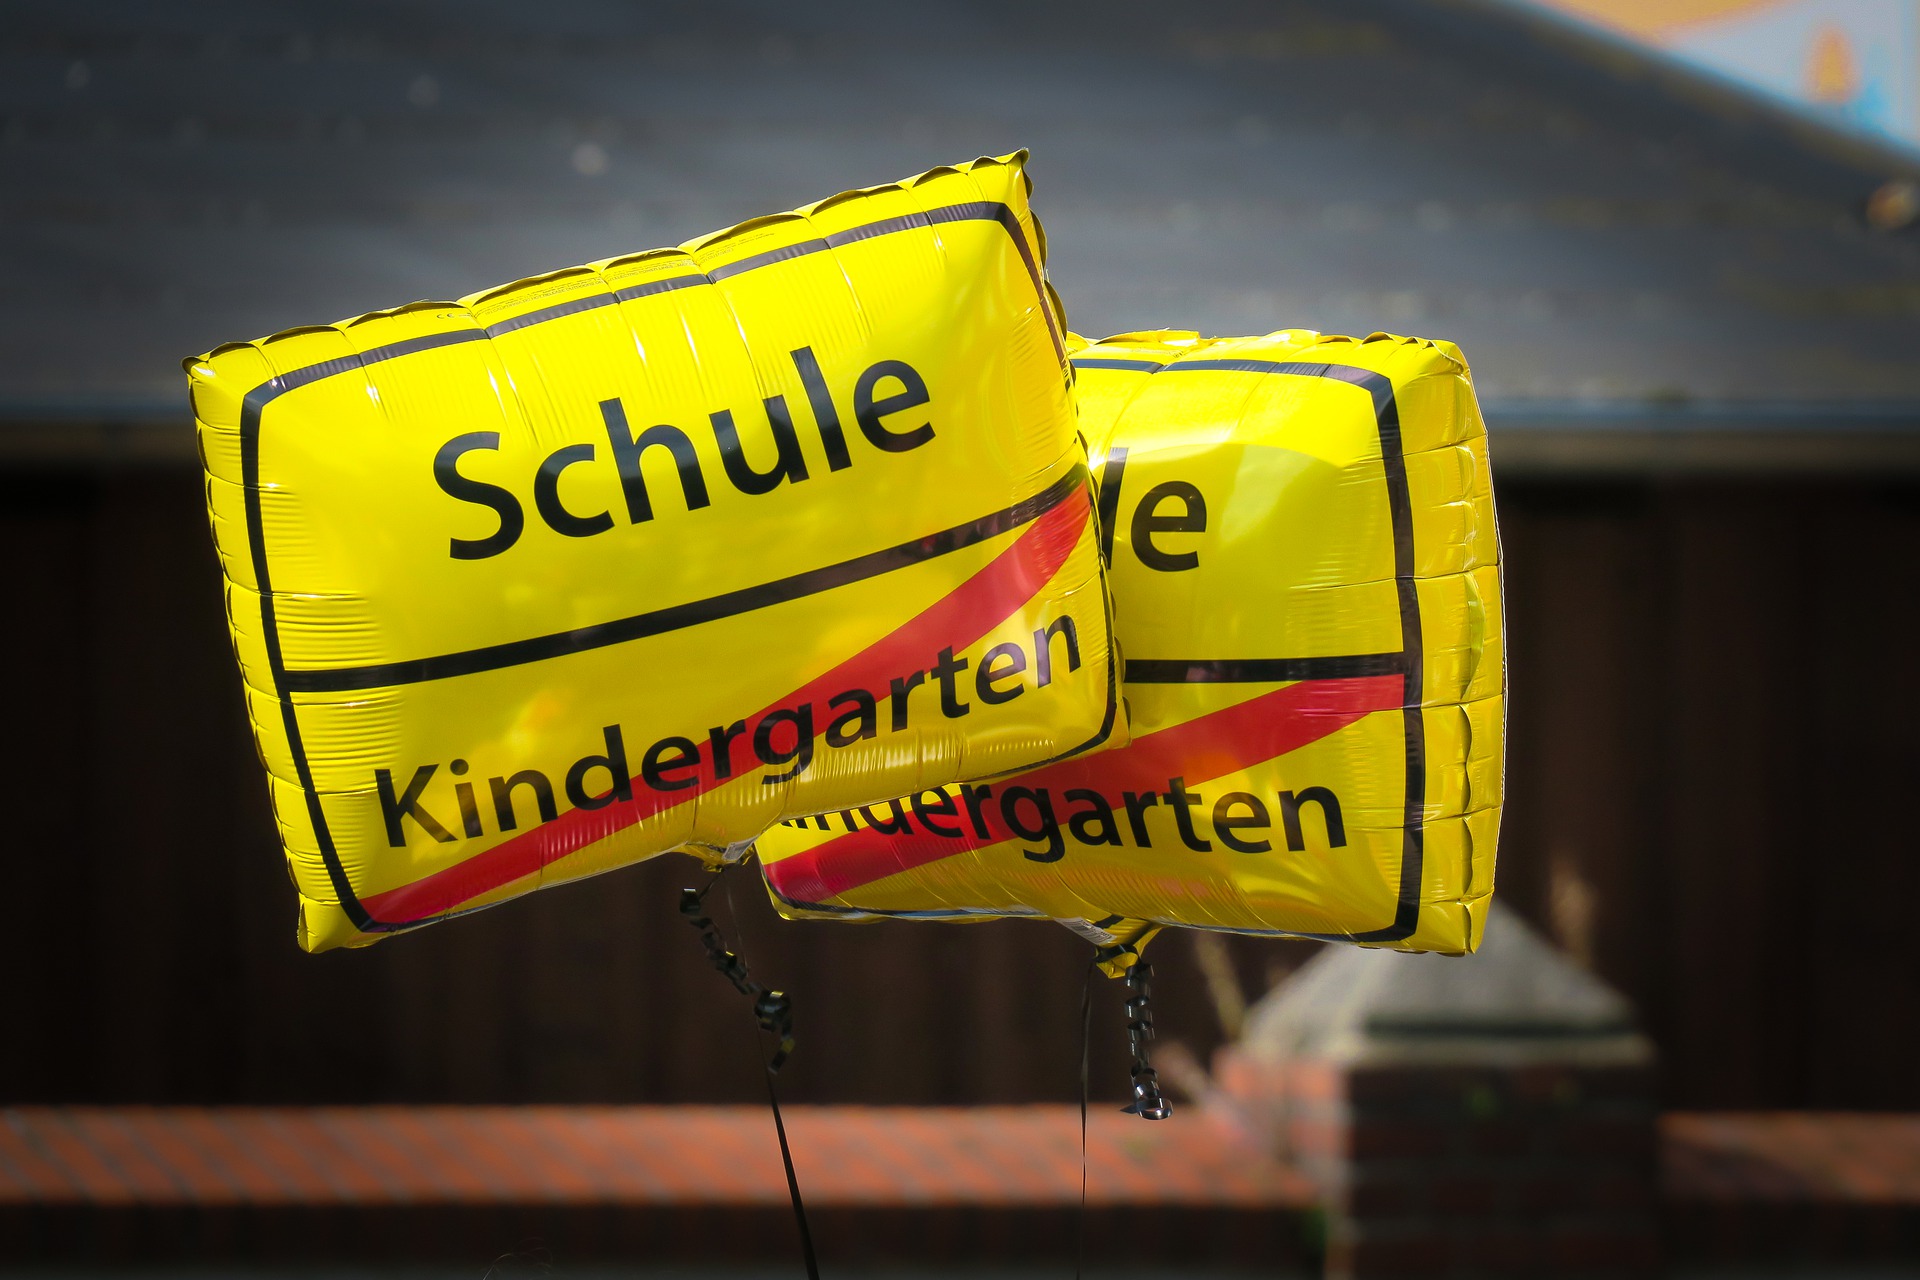 Luftballons mit dem Wort Schule und dem durchgestrichenen Wort Kindergarten